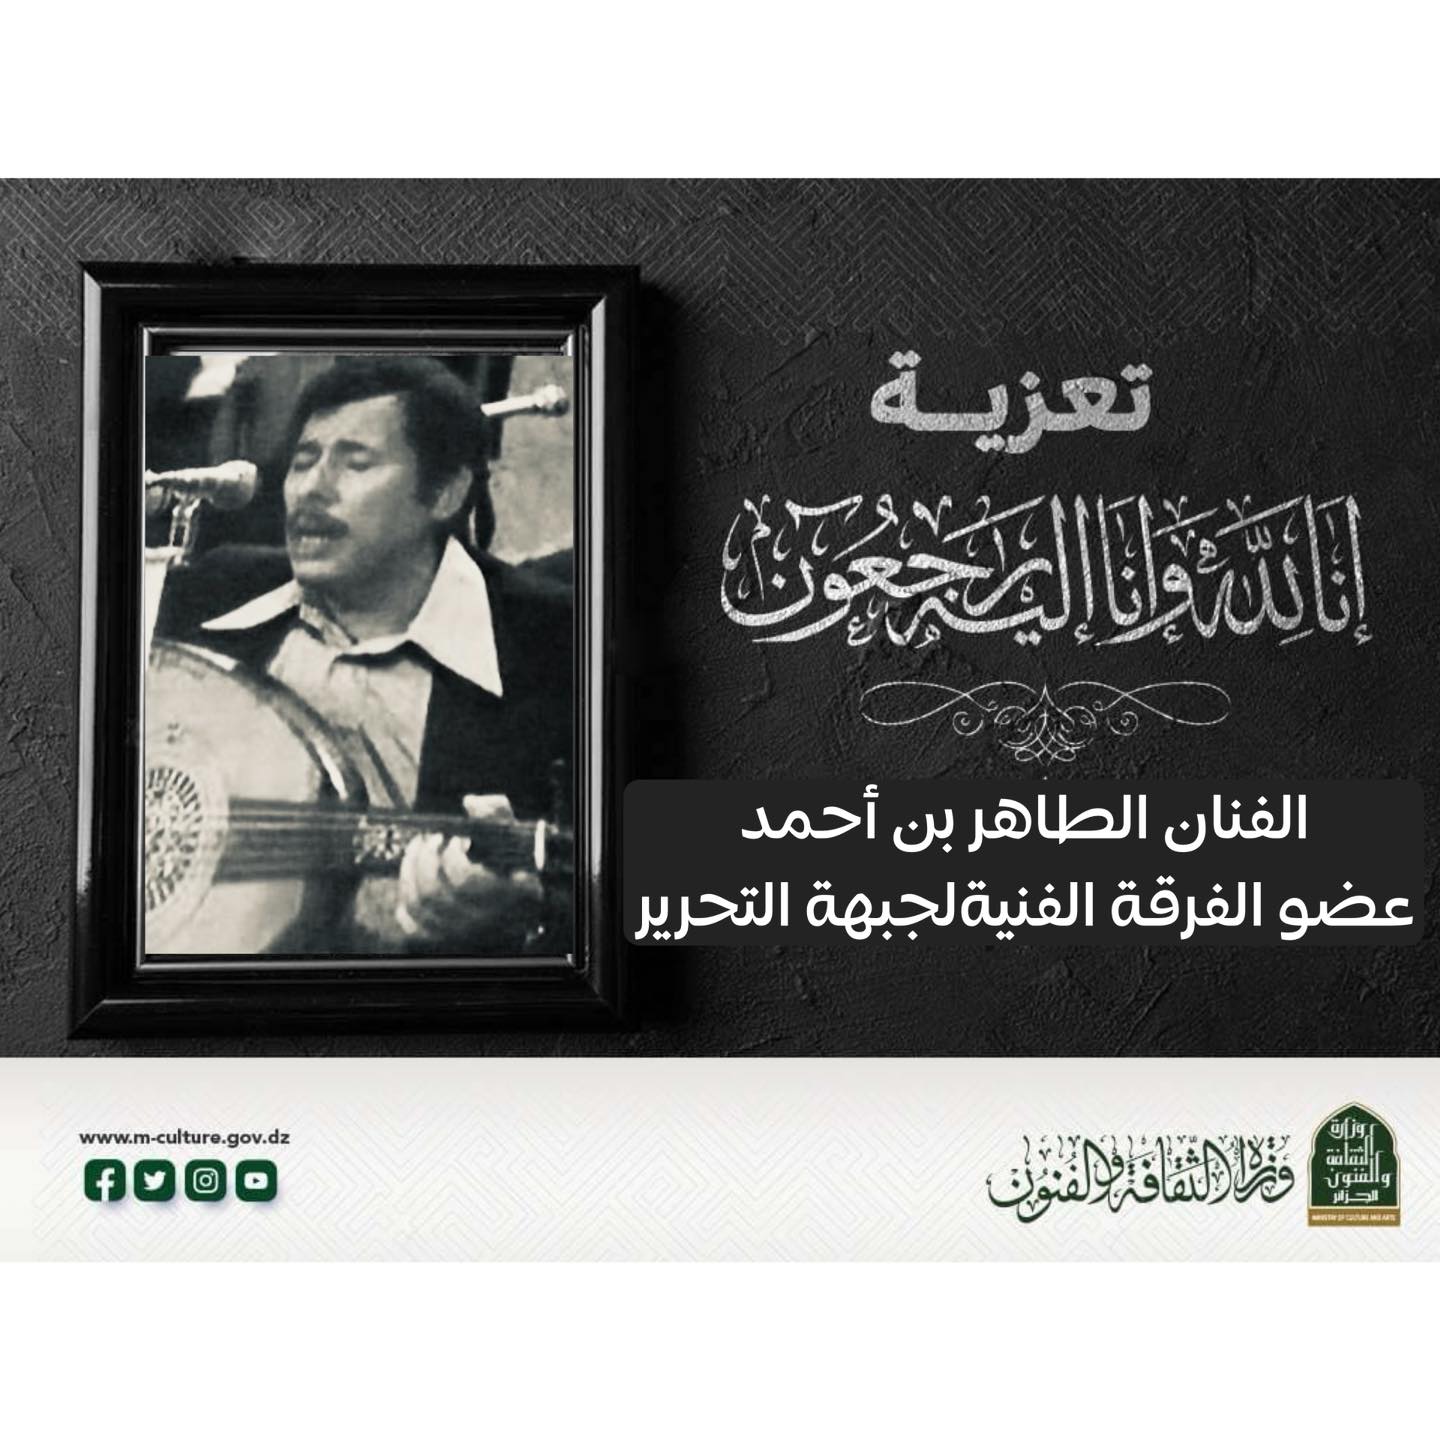 وفاة-الفنان-المجاهد-الطاهر-بن-أحمد-عضو-الفرقة-الفنية-لجبهة-التحرير-الوطني